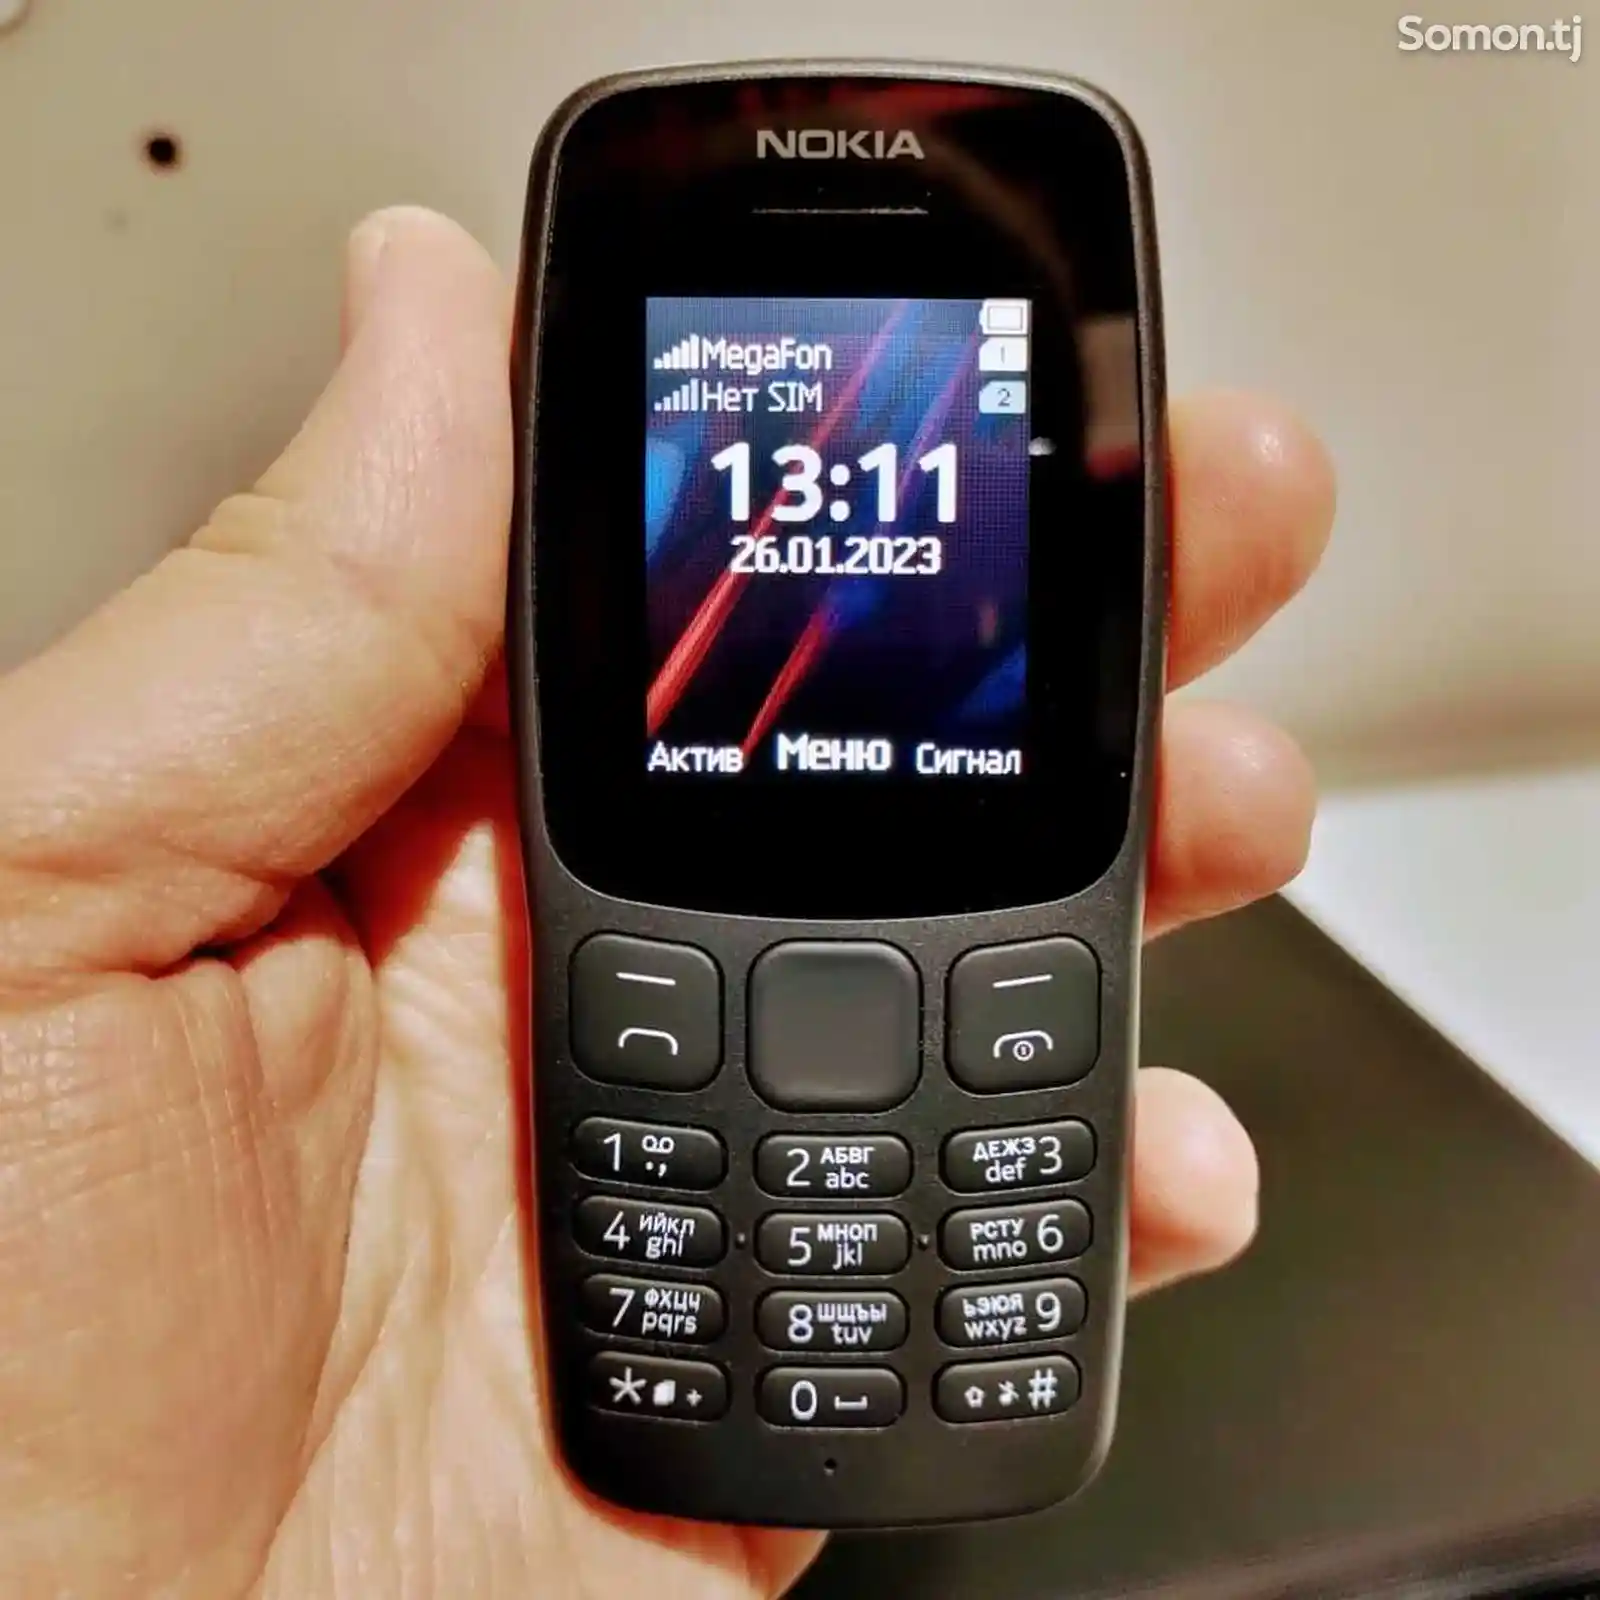 Nokia 106-2